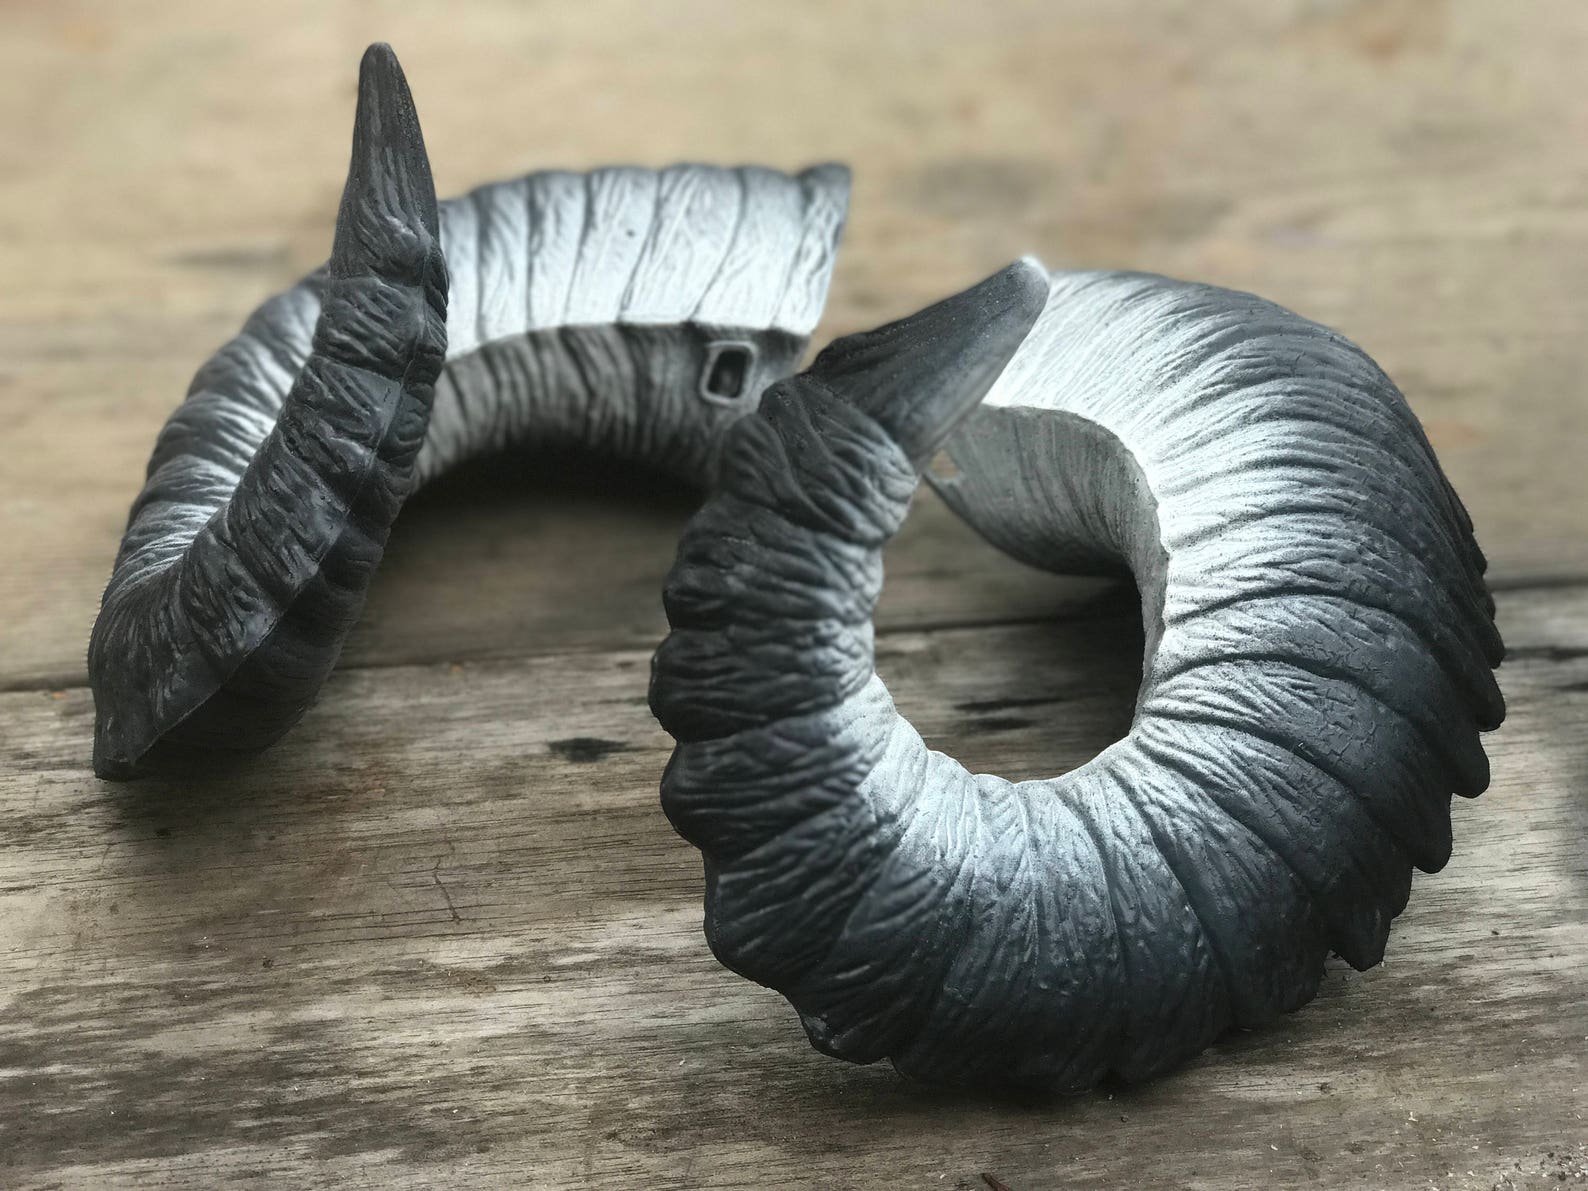 Cosplay Ram Horns Sharky Demon Horns by Hoopy Frood 画 像 1.